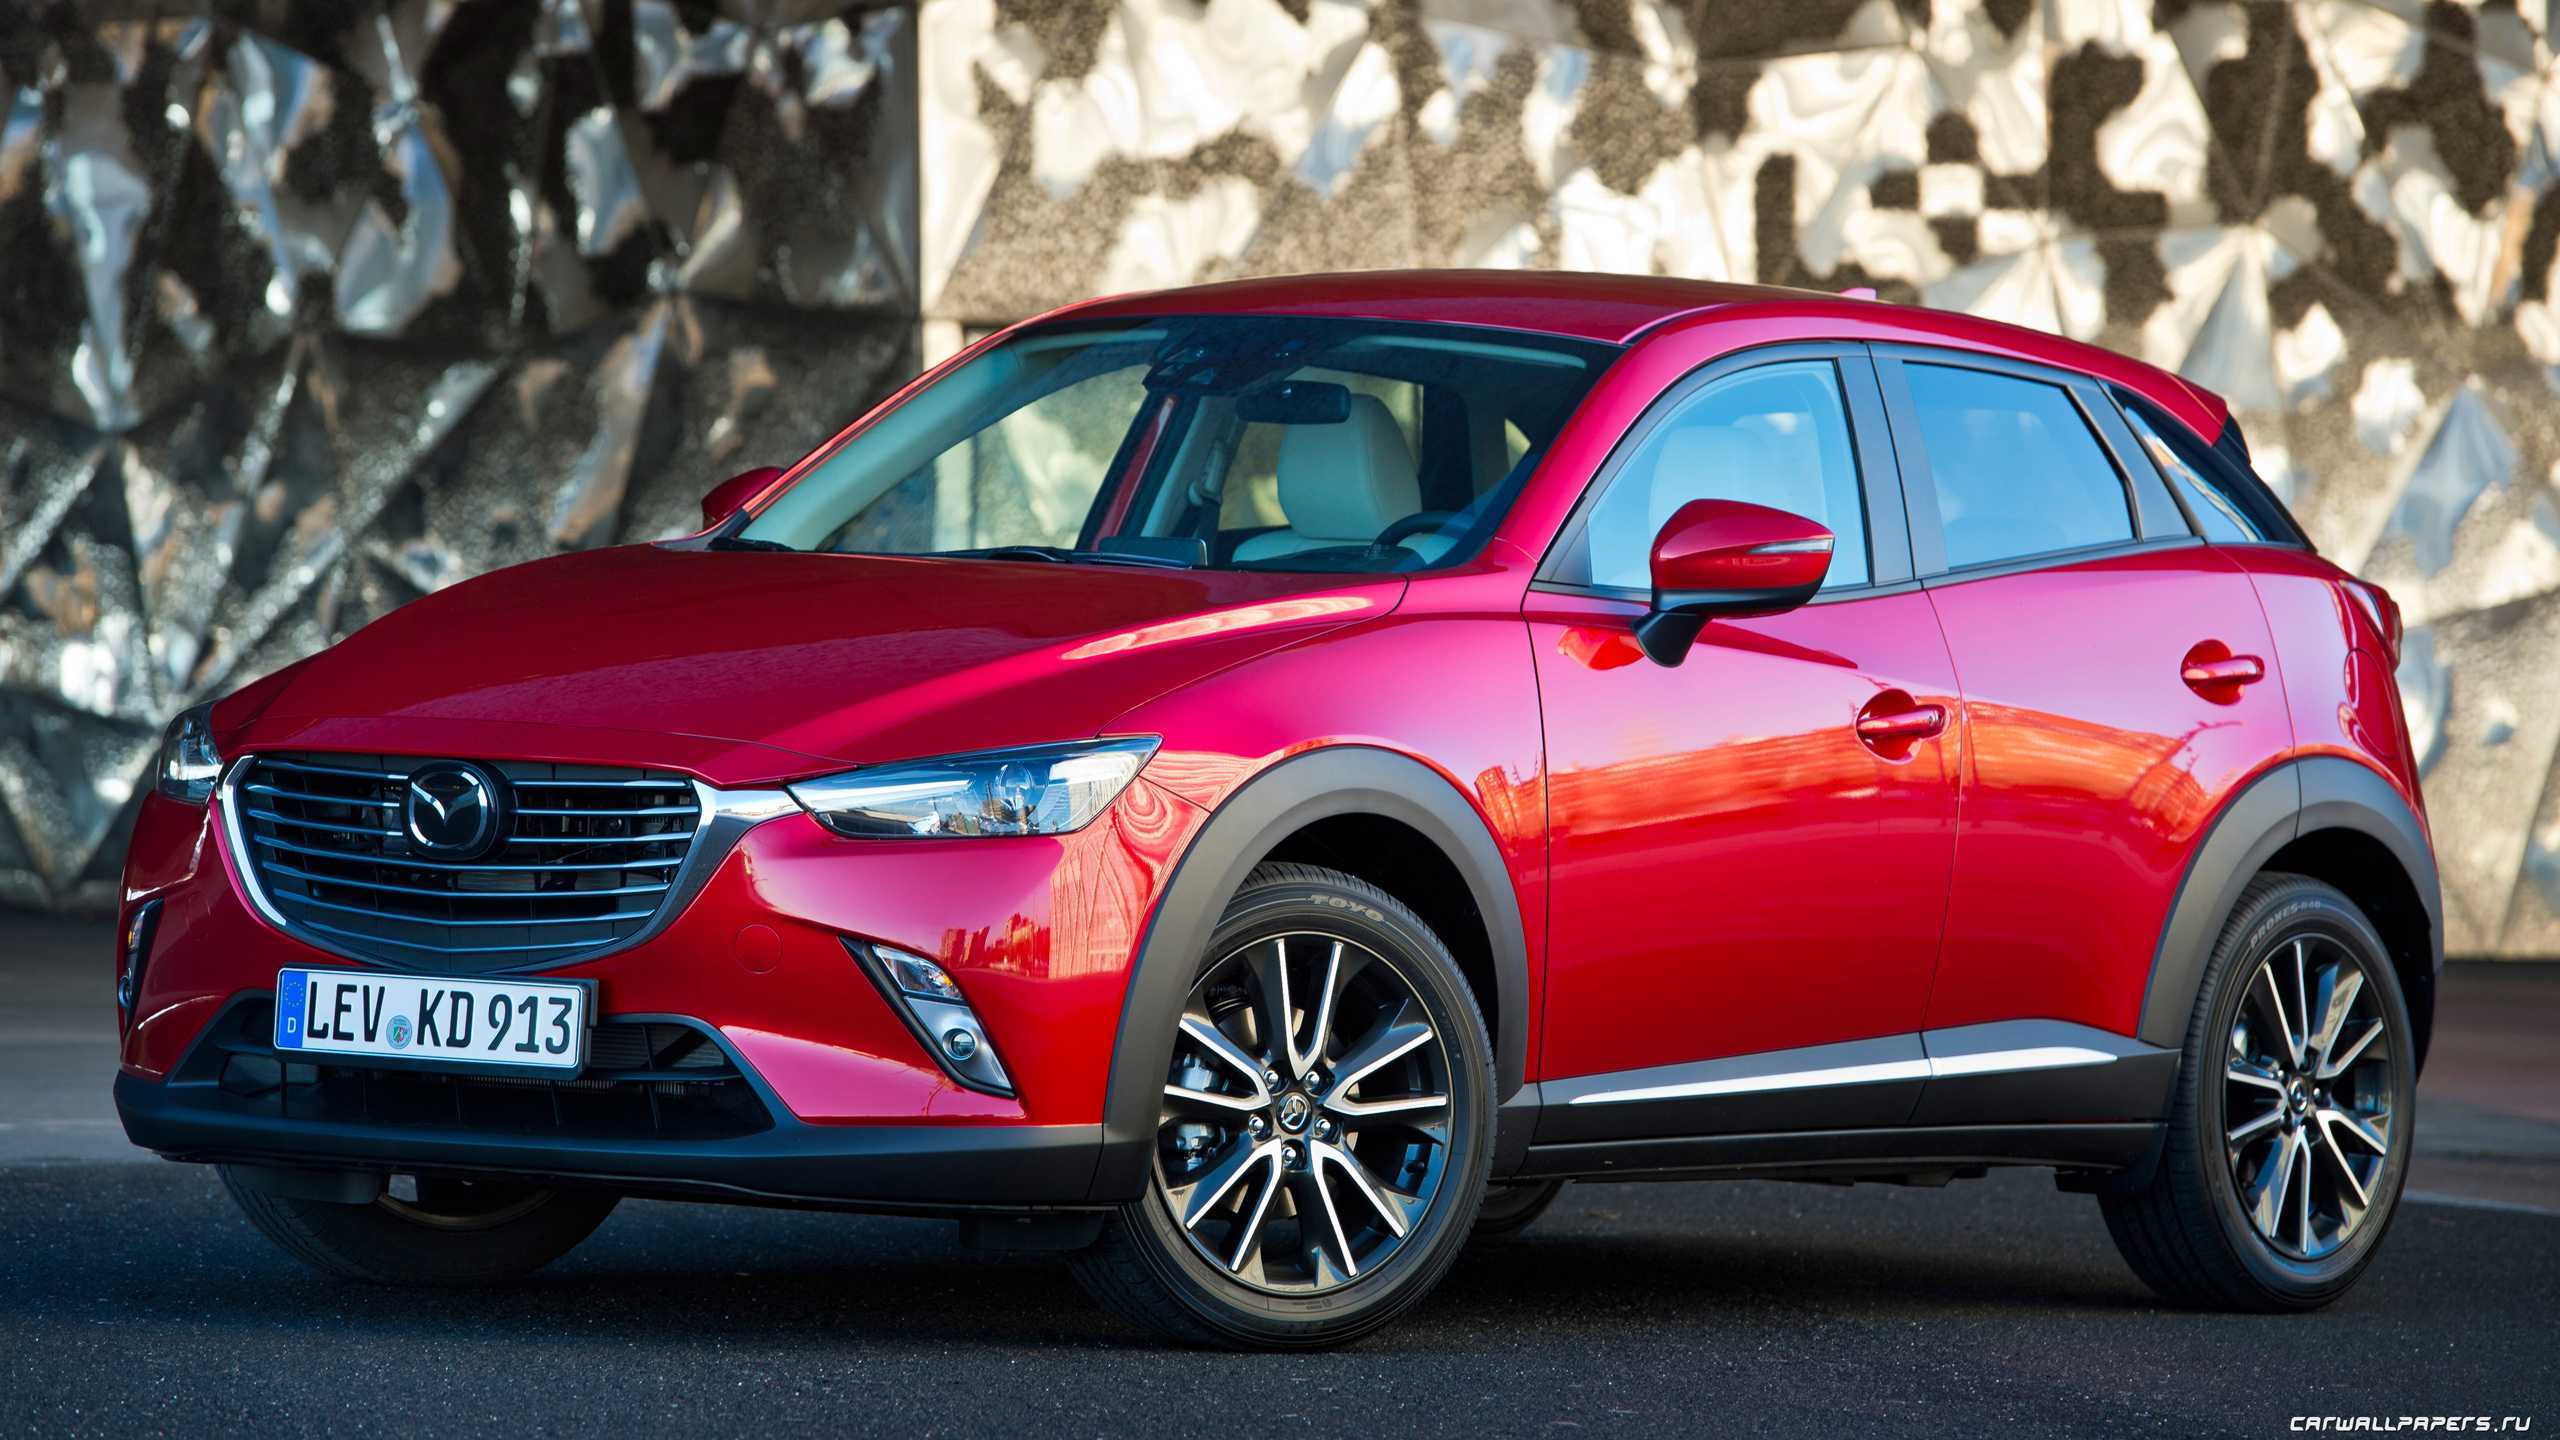 Mazda cx-3 2016 модельного года и ее компактные размеры